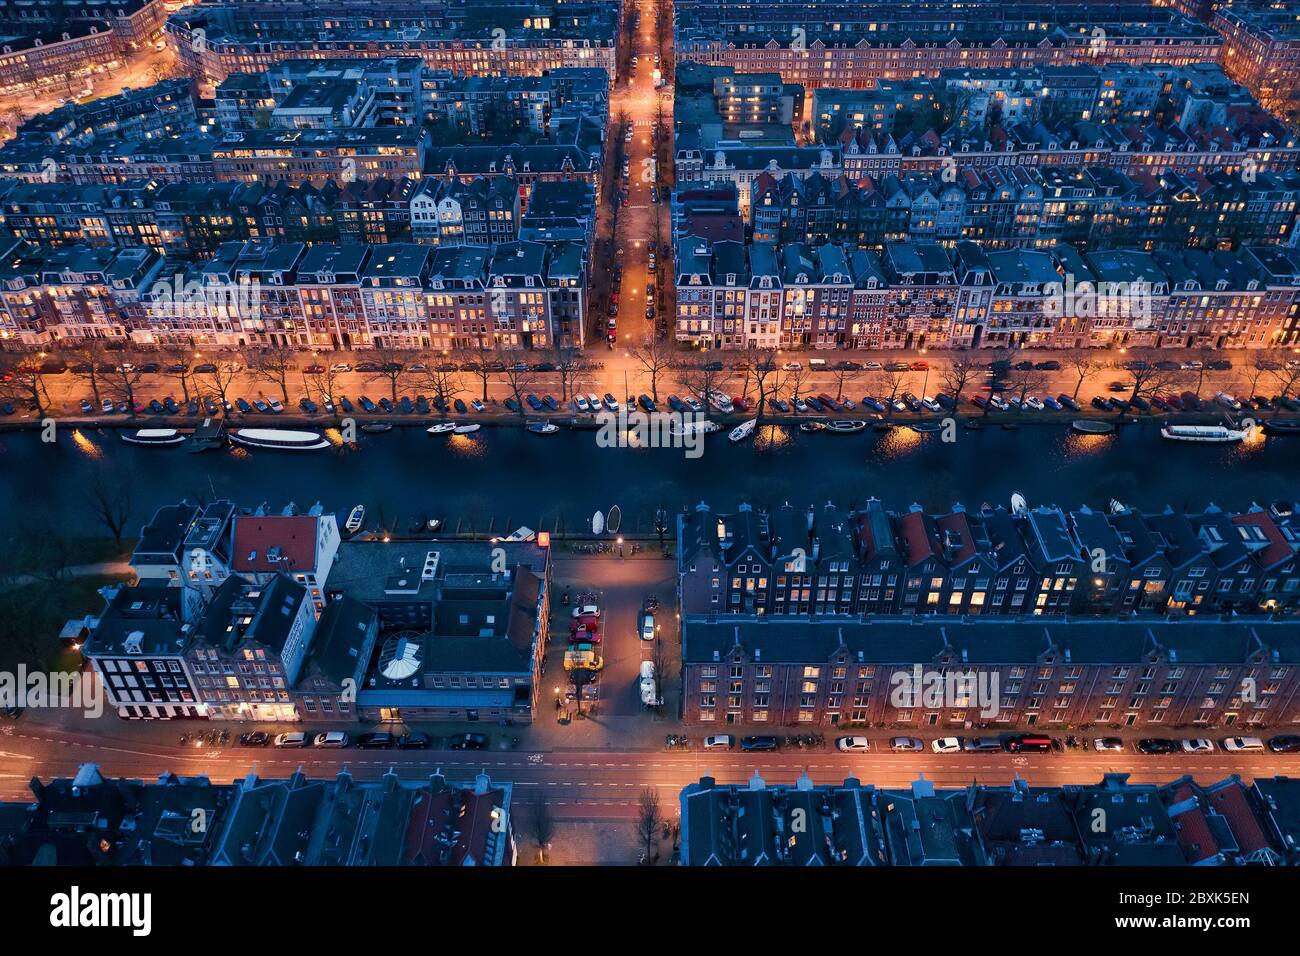 Schöner Abend Amsterdam Luftaufnahme von oben mit engen Kanälen und alten berühmten Tanzhäusern Architektur. Stockfoto